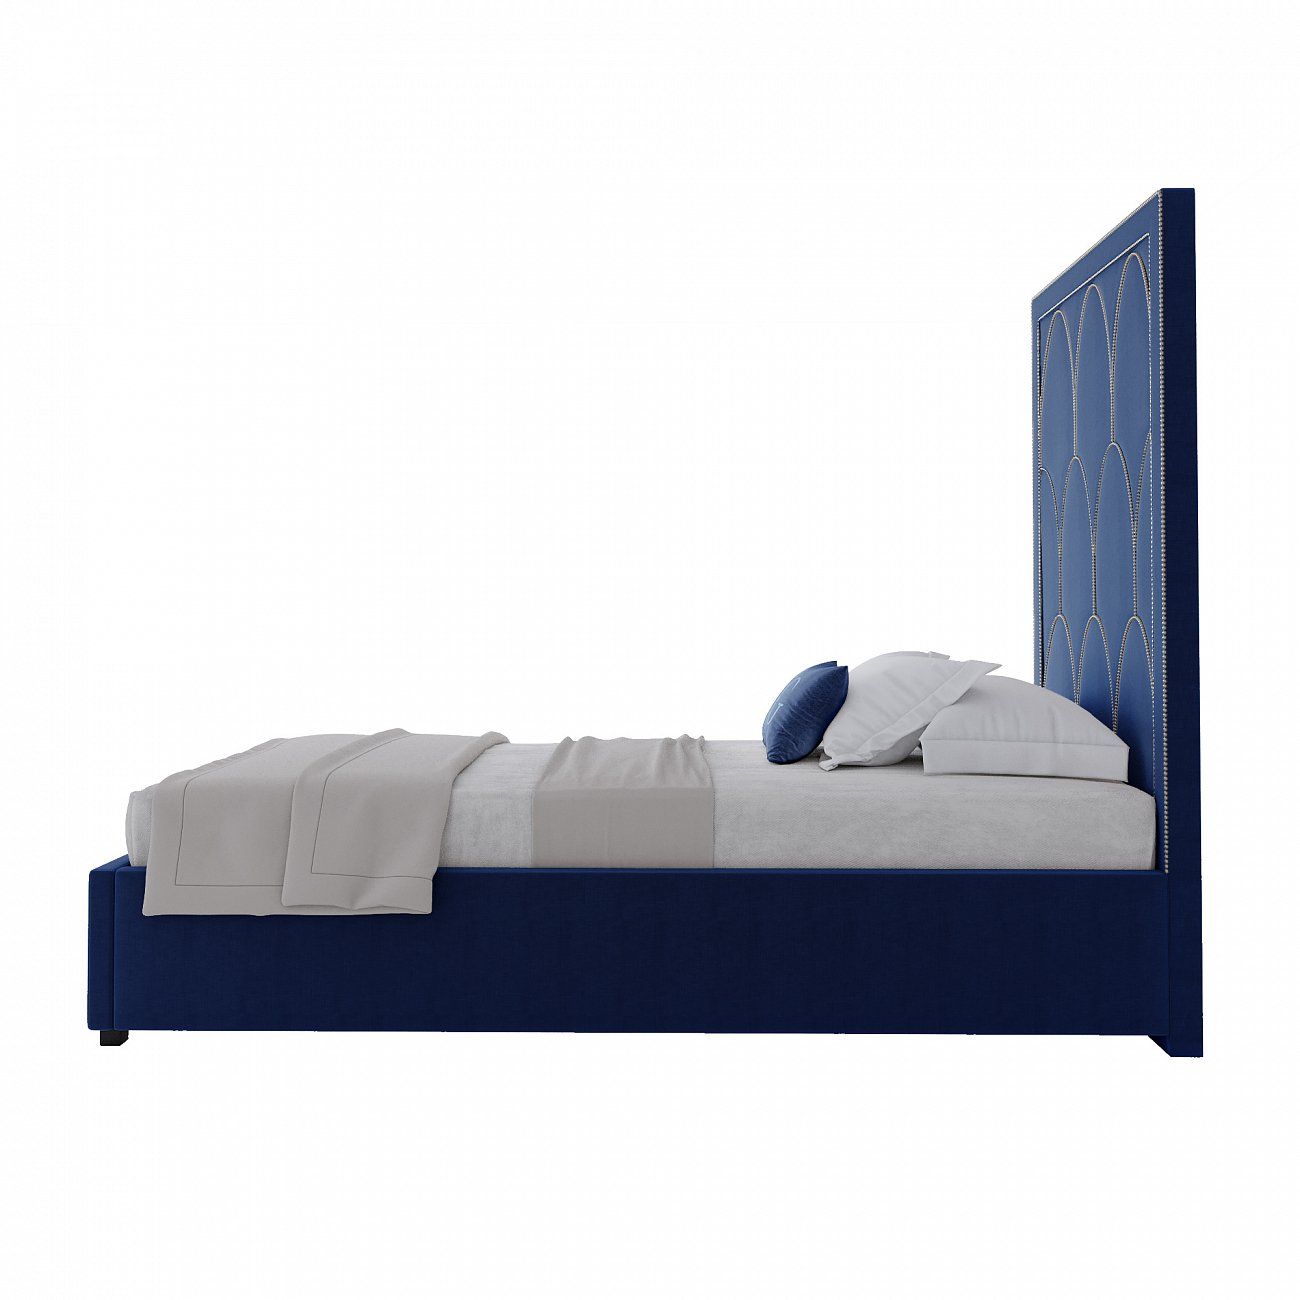 Кровать односпальная 90х200 Petals Queen синяя